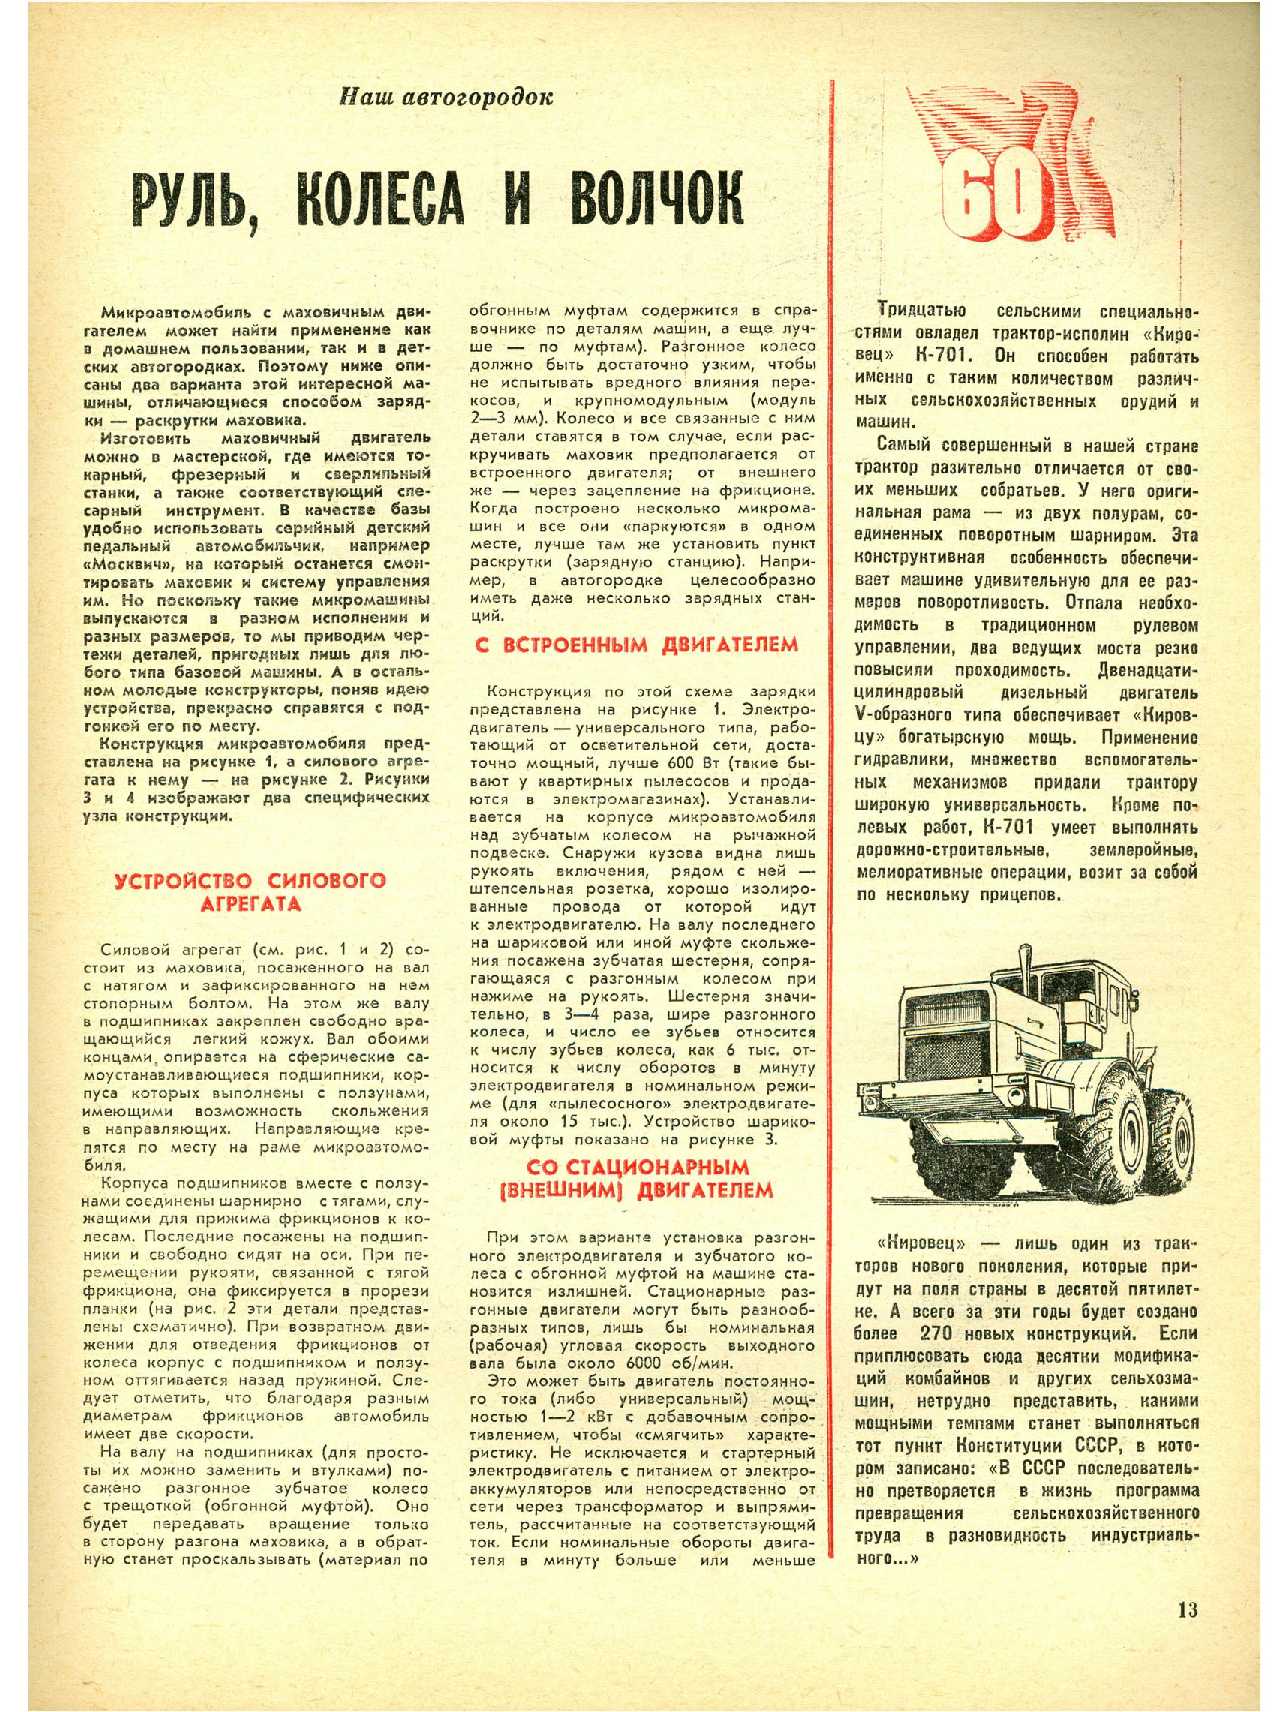 МК 11, 1977, 13 c.